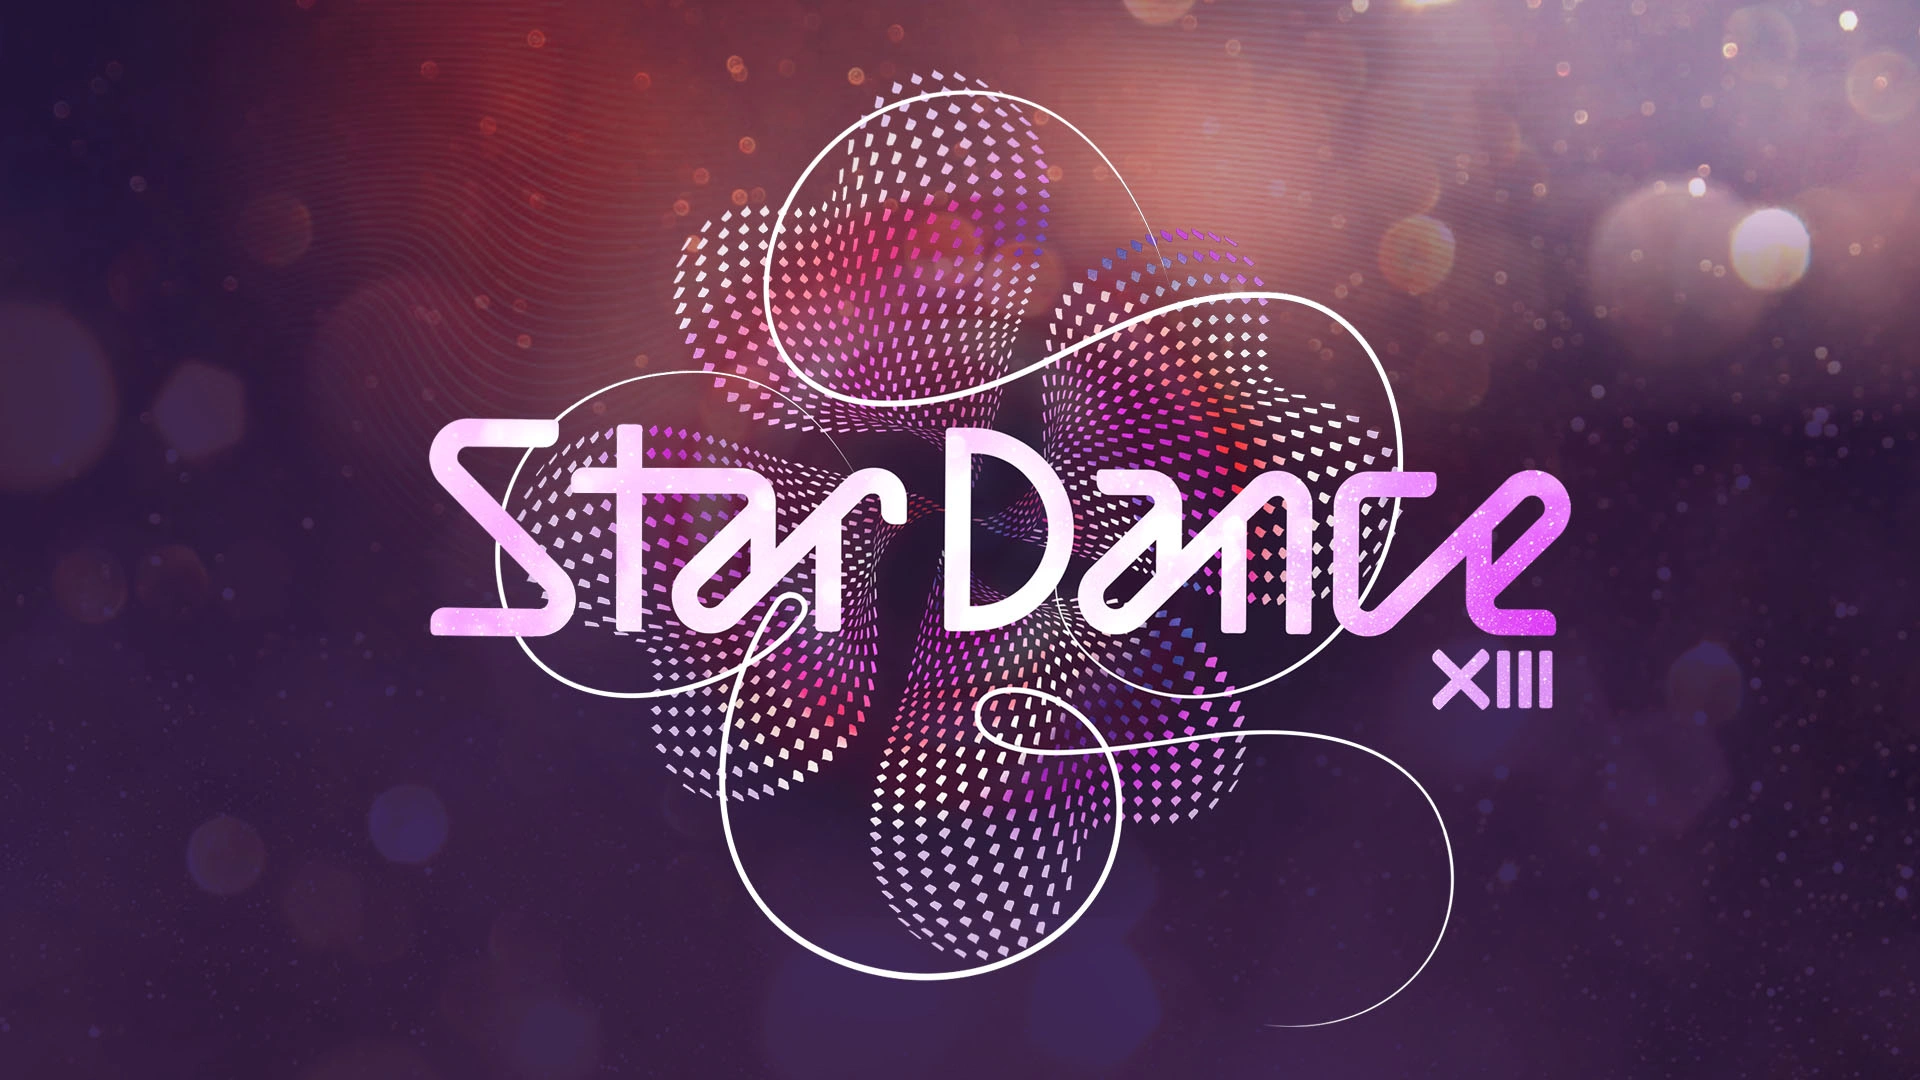 Radostná seznámení – soutěžící třináctého ročníku StarDance vědí, s kým budou tančit